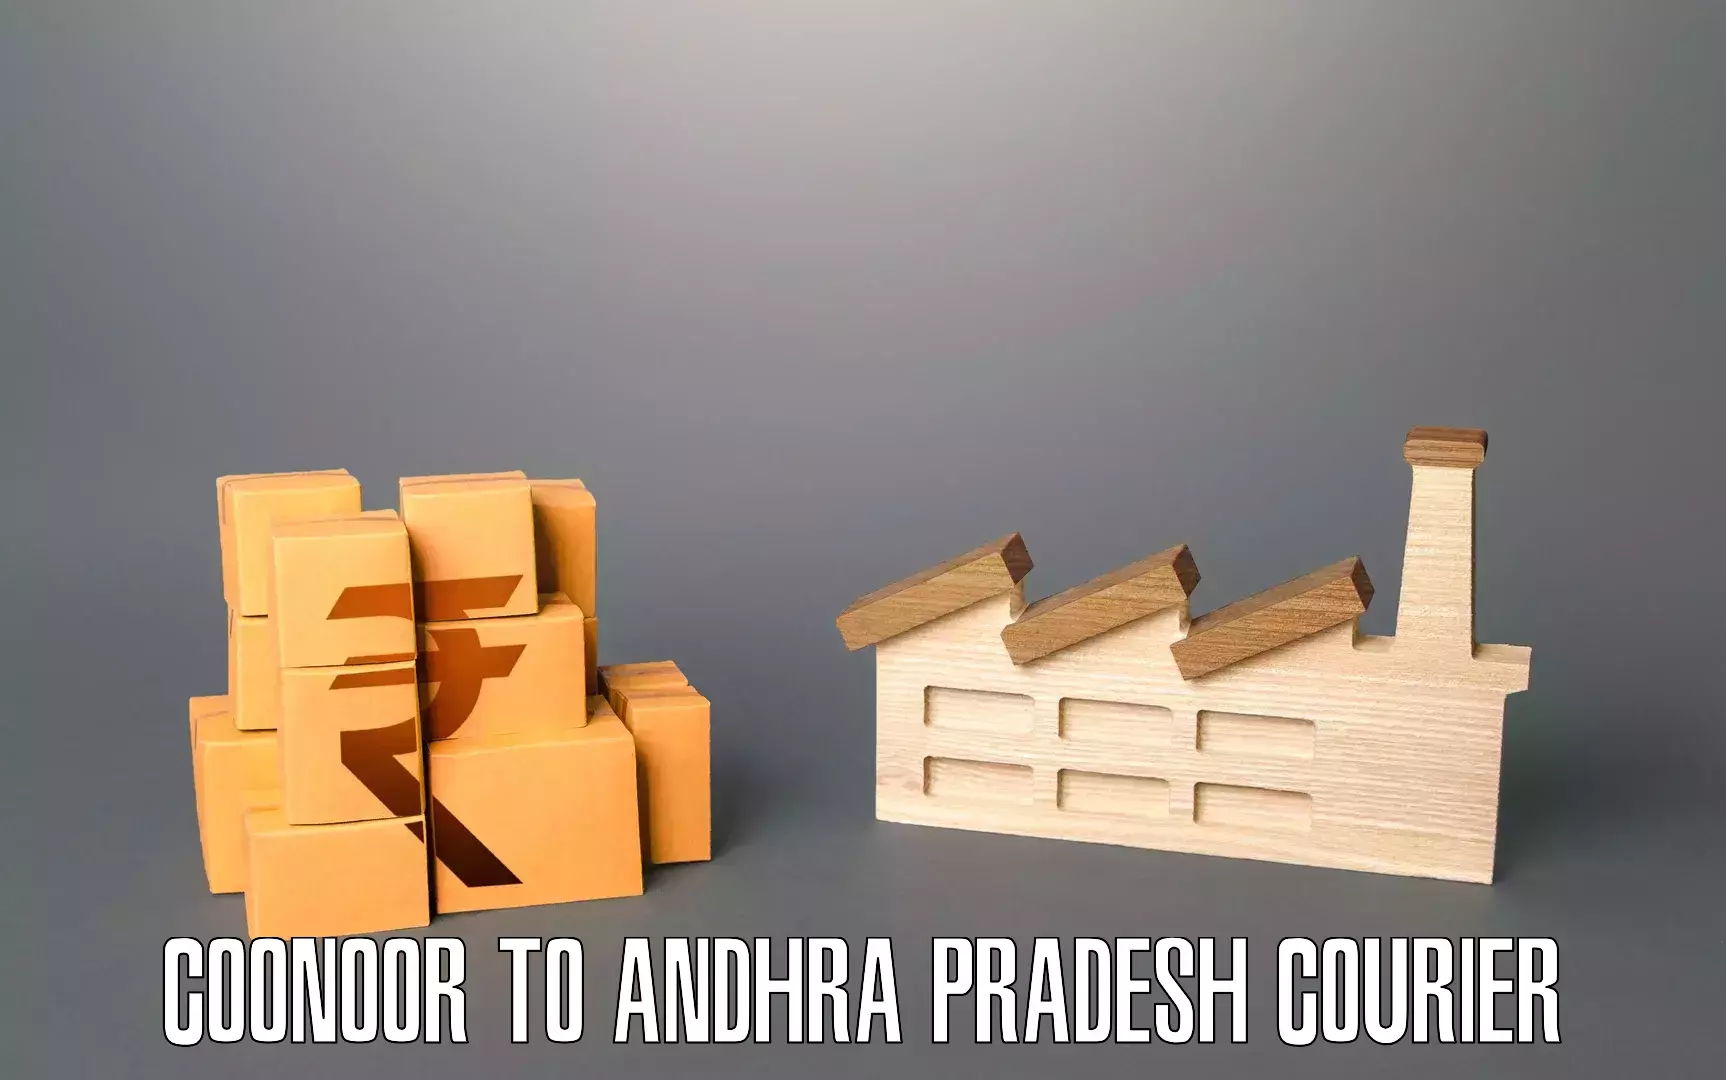 Custom moving plans in Coonoor to Andhra Pradesh